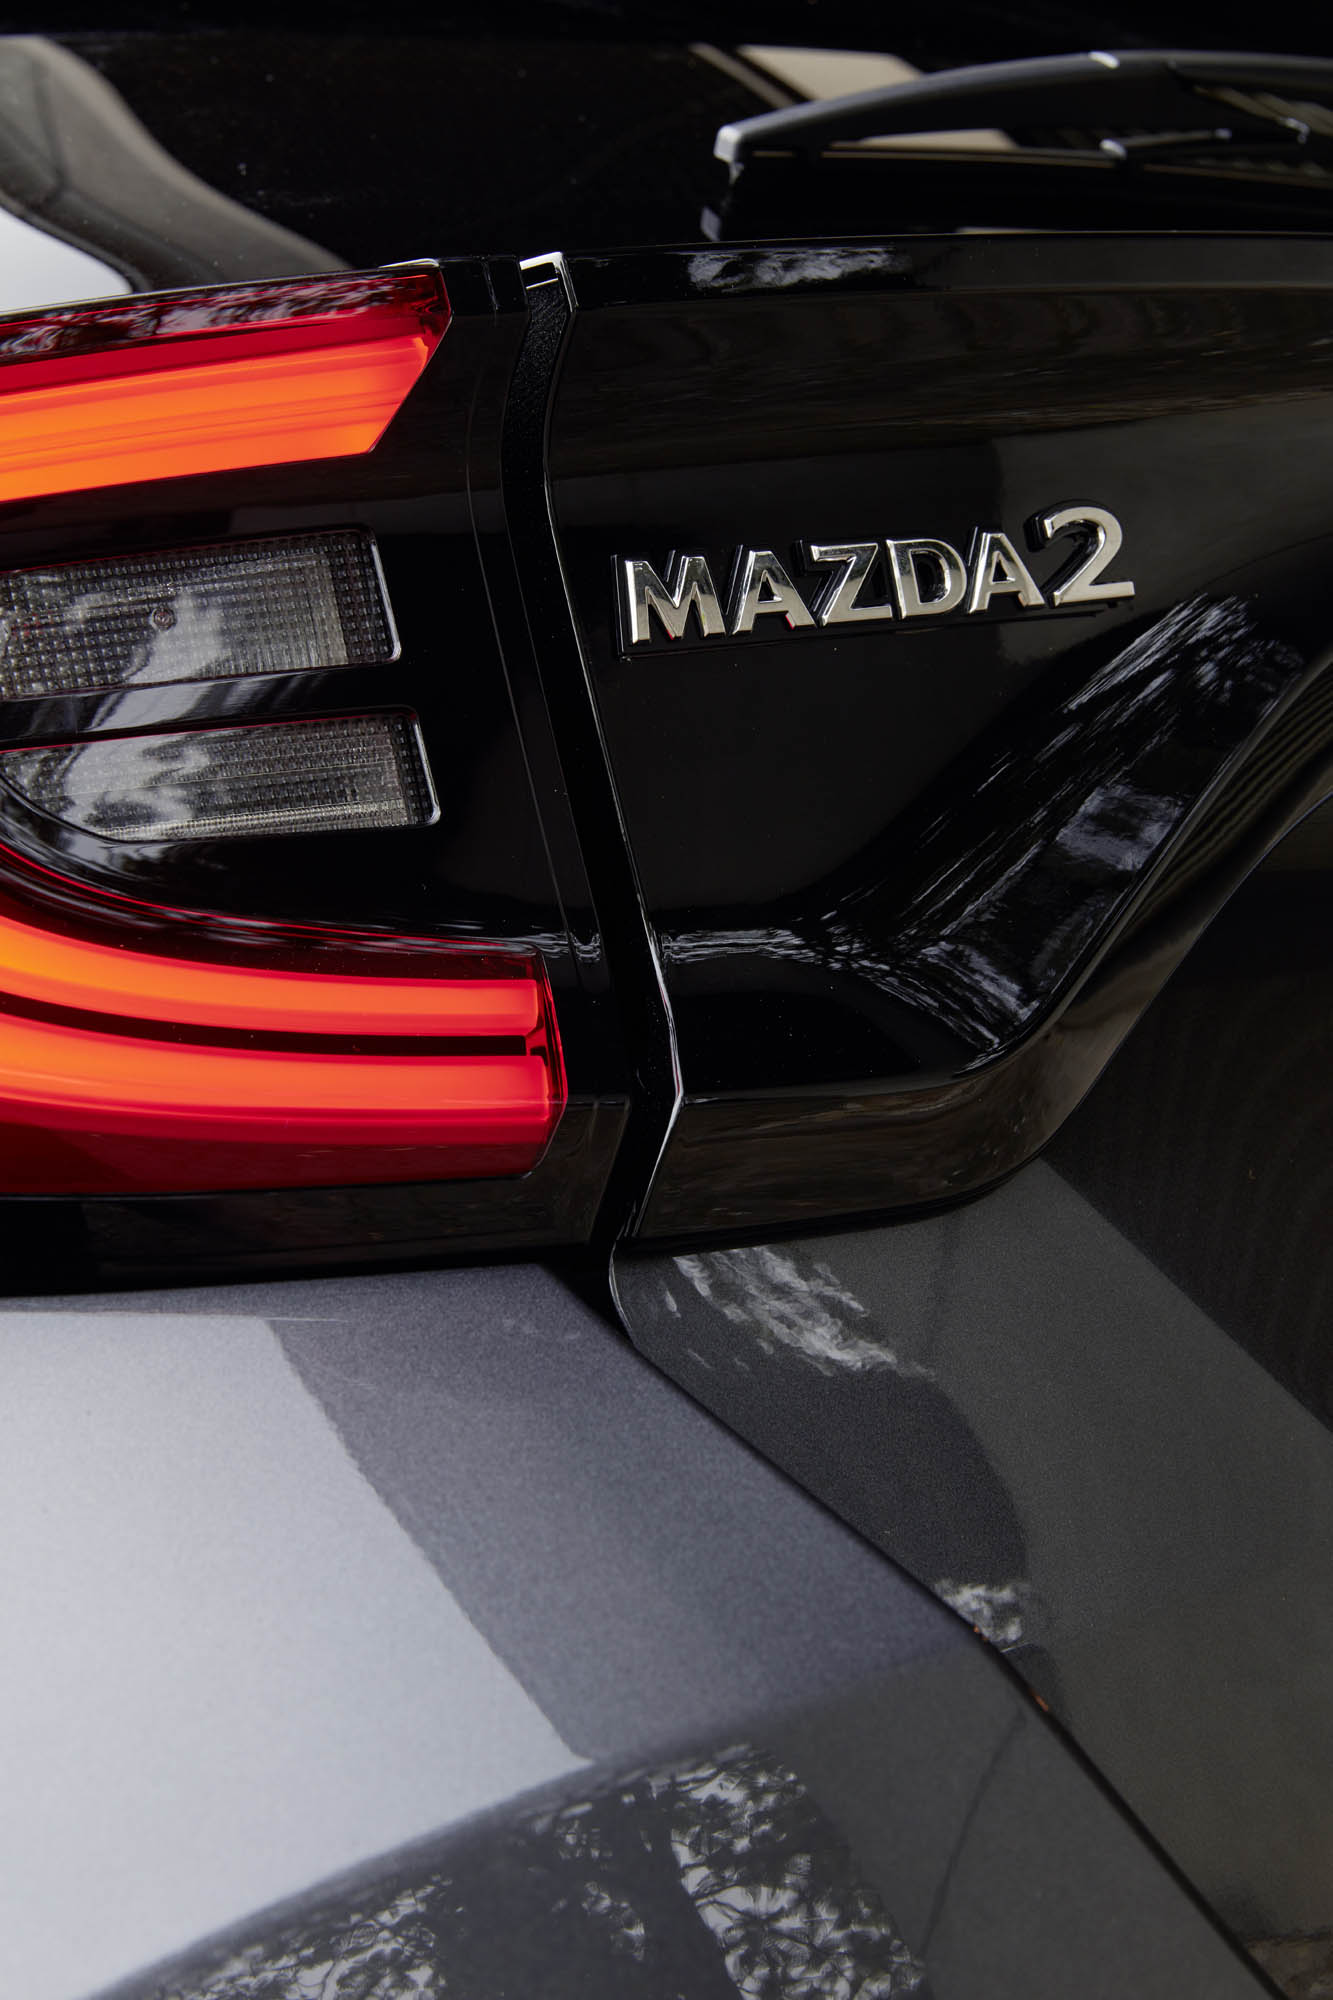 Новый гибрид Mazda разгоняется от 0 до 100 км/ч за 9,7 секунды и обеспечивает экономию топлива в смешанном цикле от 3,8 до 4,0 литров на 100 км и выбросы CO2 всего 93-87 г/км в зависимости от 16 или 15 дюймовых колес.